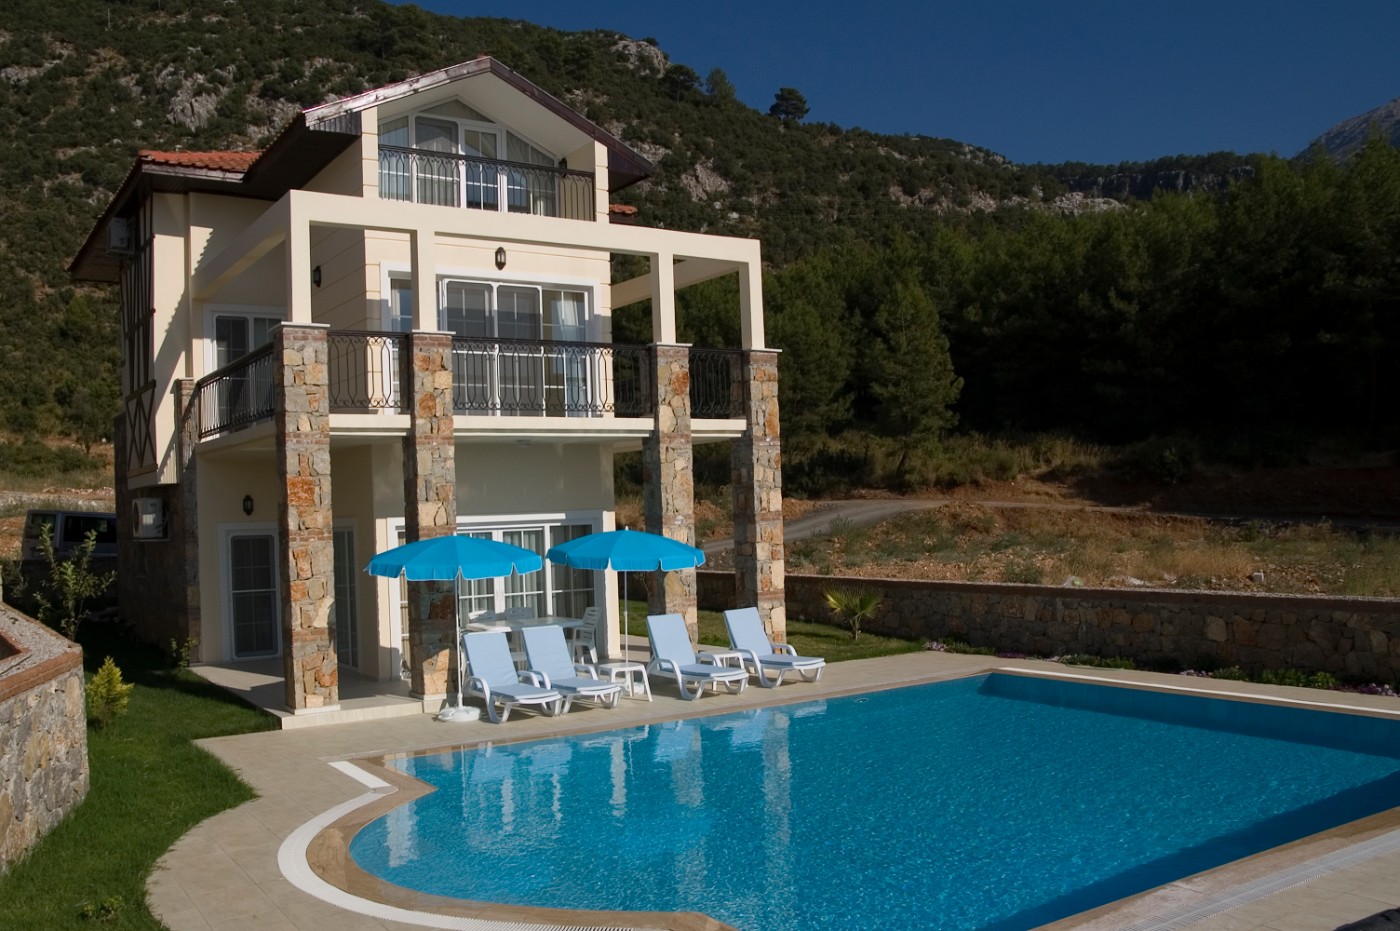 Fethiye Ovacık'ta Muhteşem Doğa İçerisinde, Özel Havuzlu, 6 Kişilik Villa